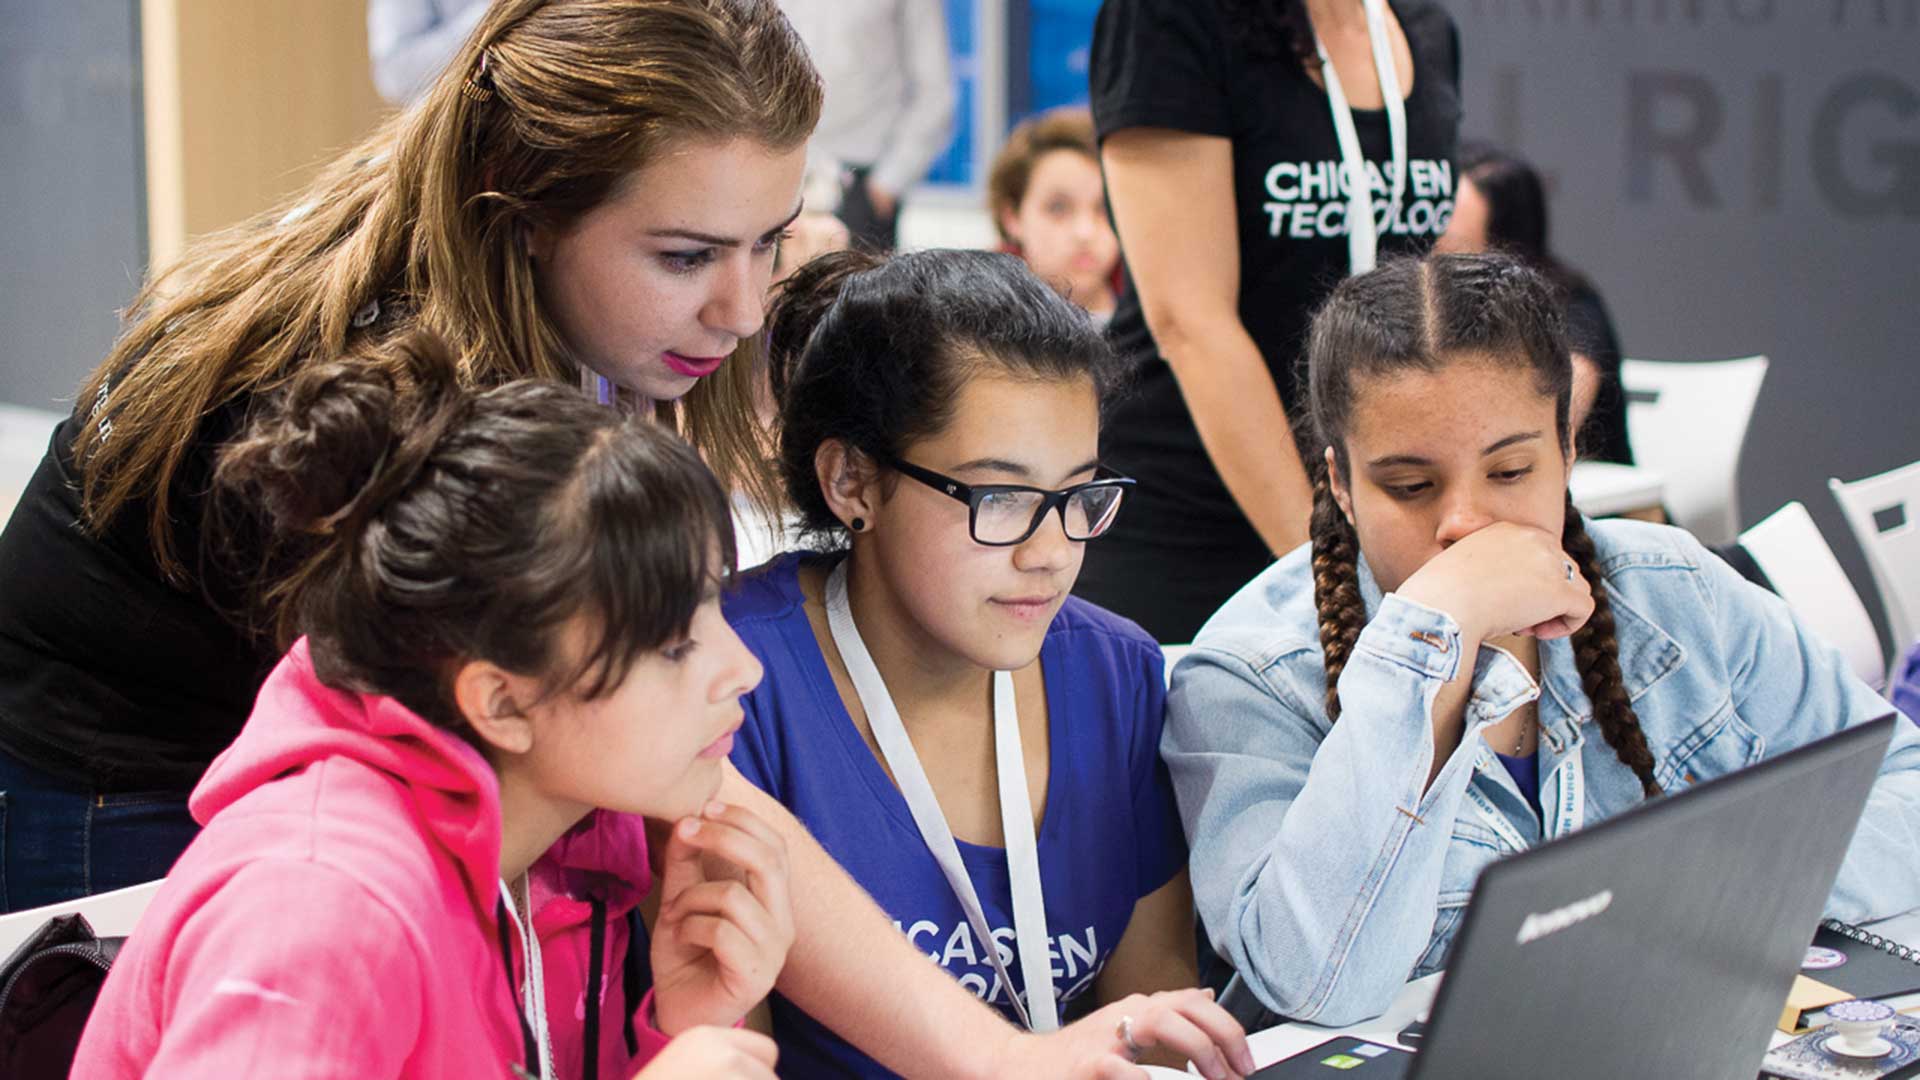 Chicas en Tecnología es una organización que desde 2015 busca reducir la brecha de género en el ambiente emprendedor tecnológico